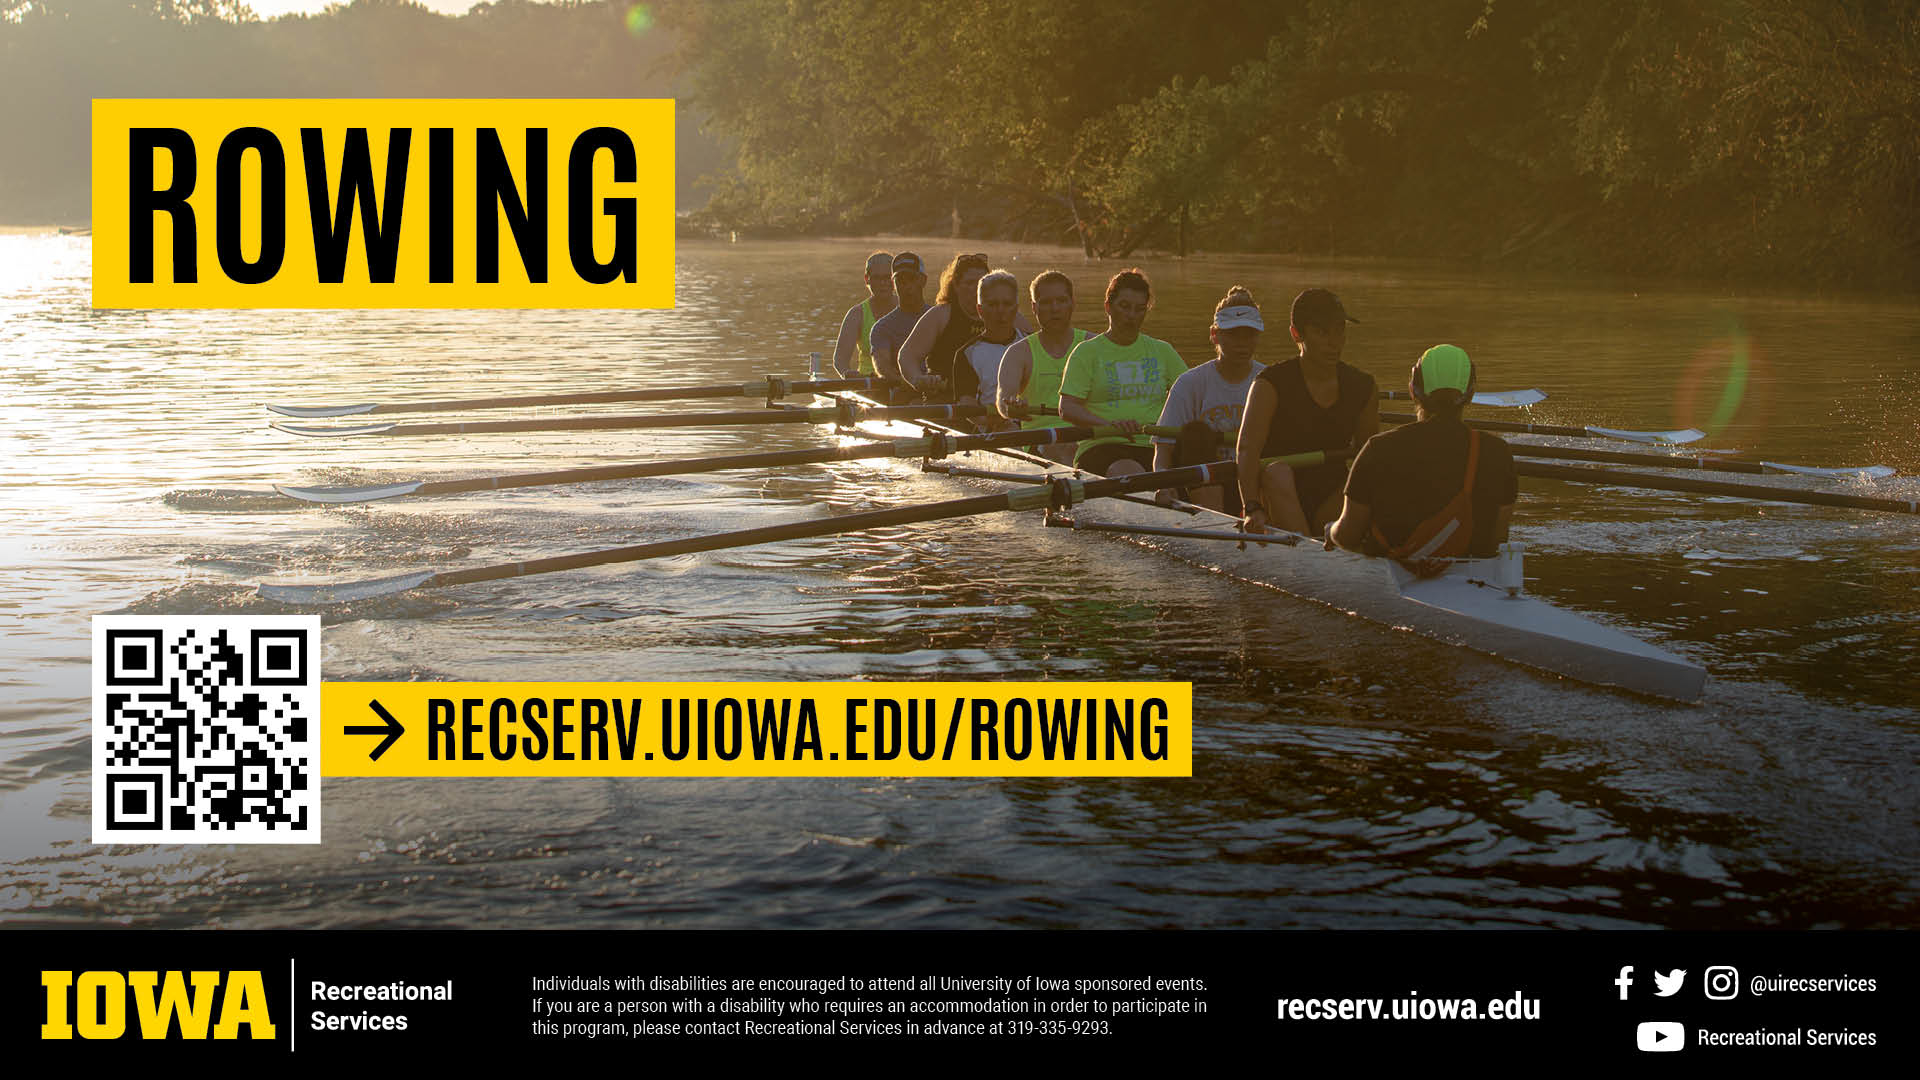 recserv.uiowa.edu/rowing